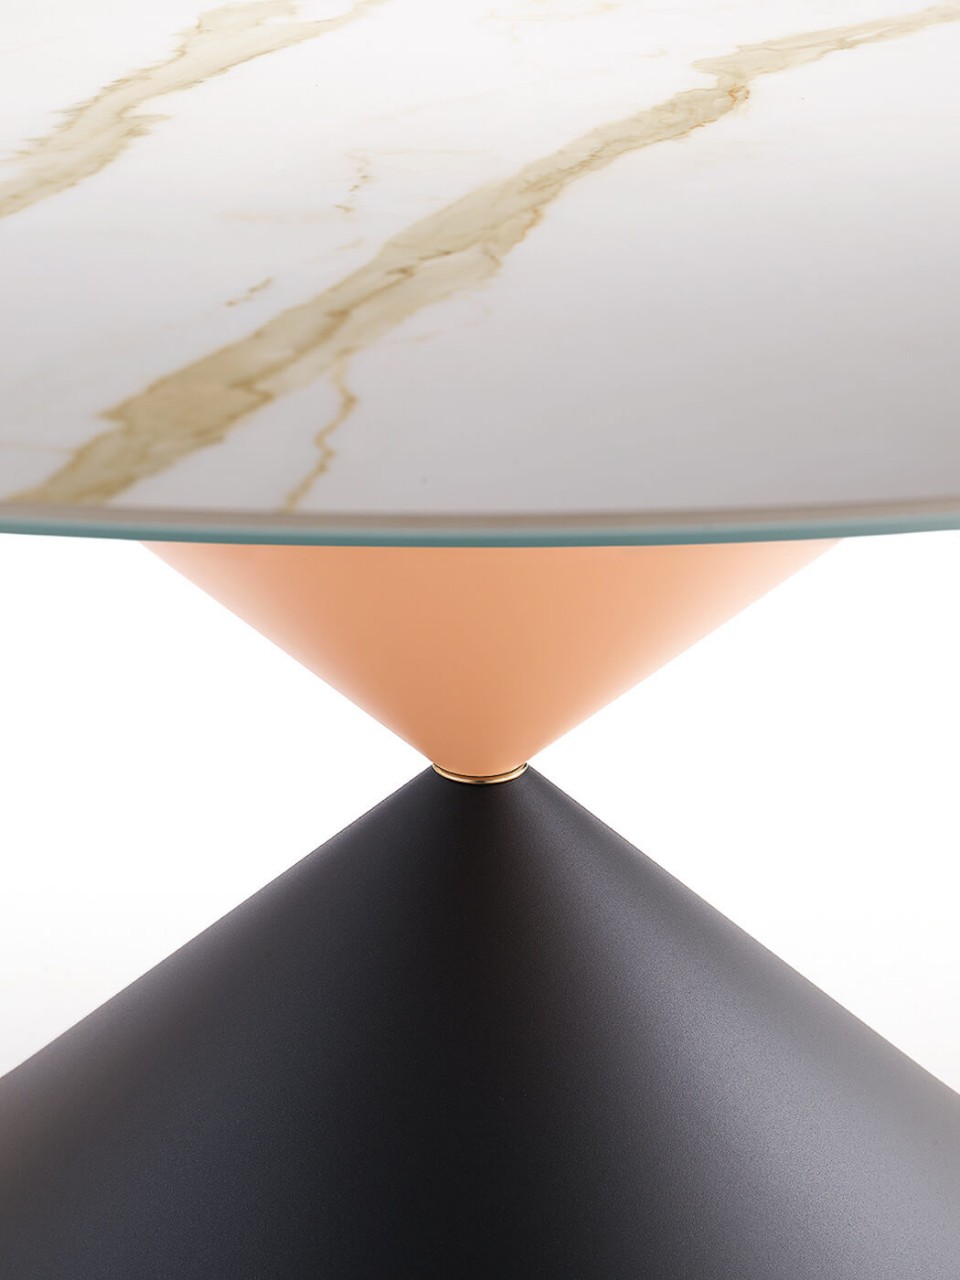 Table ronde Clessidra de 150 cm de diamètre avec base en métal en graphite et finition rose avec insert métallique en finition or rose, plateau en cristalcéramique